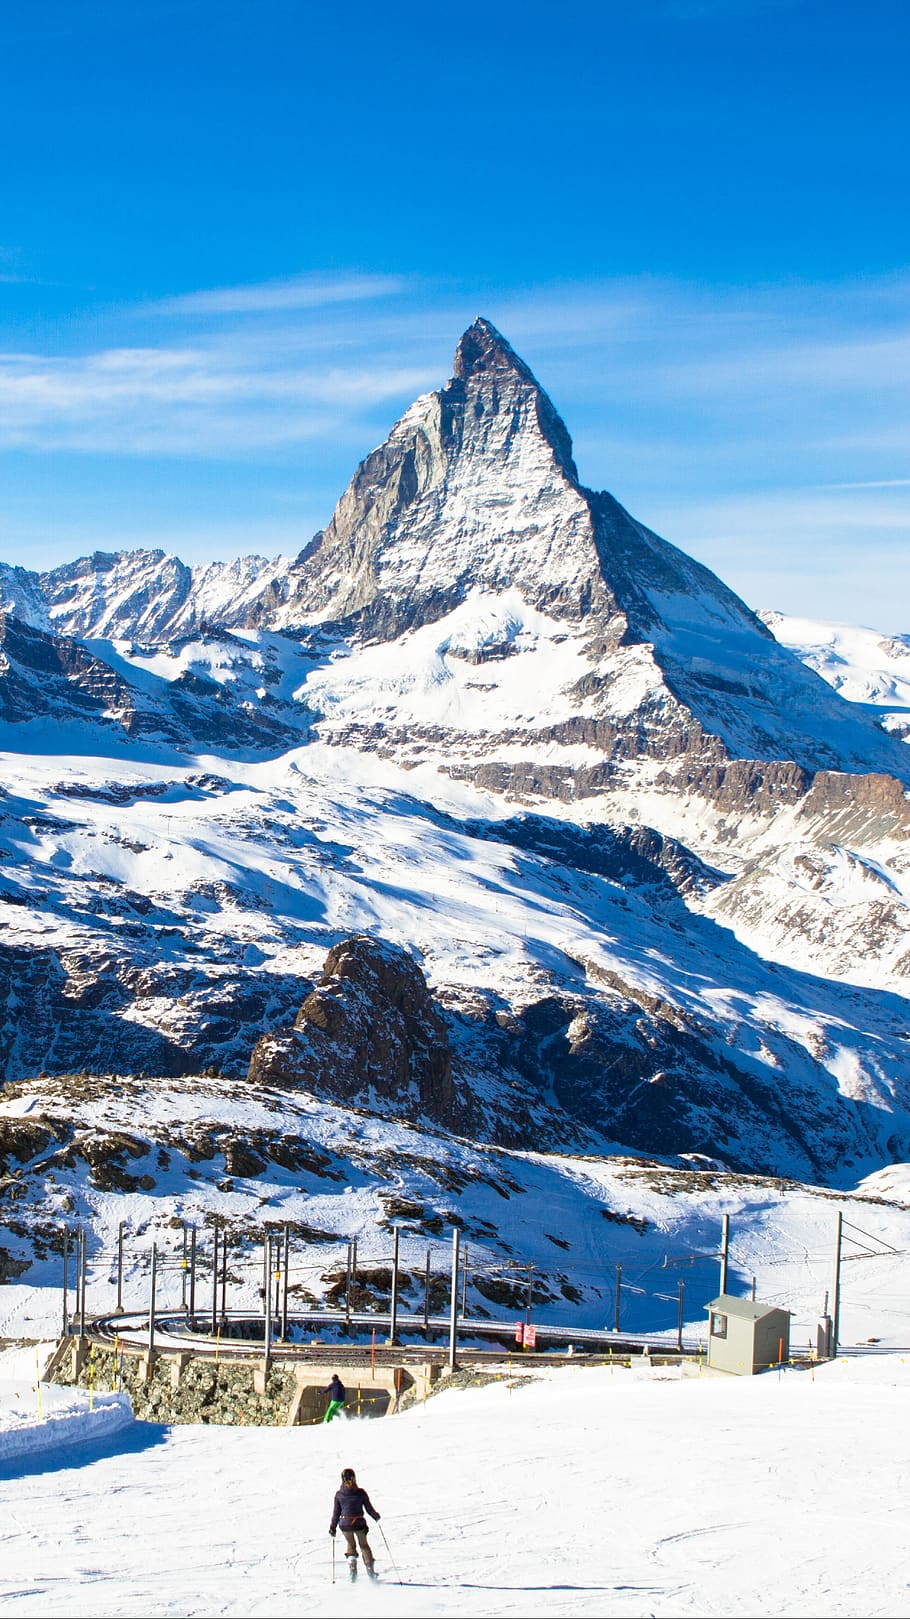 Matterhorn in the Alps of Switzerland